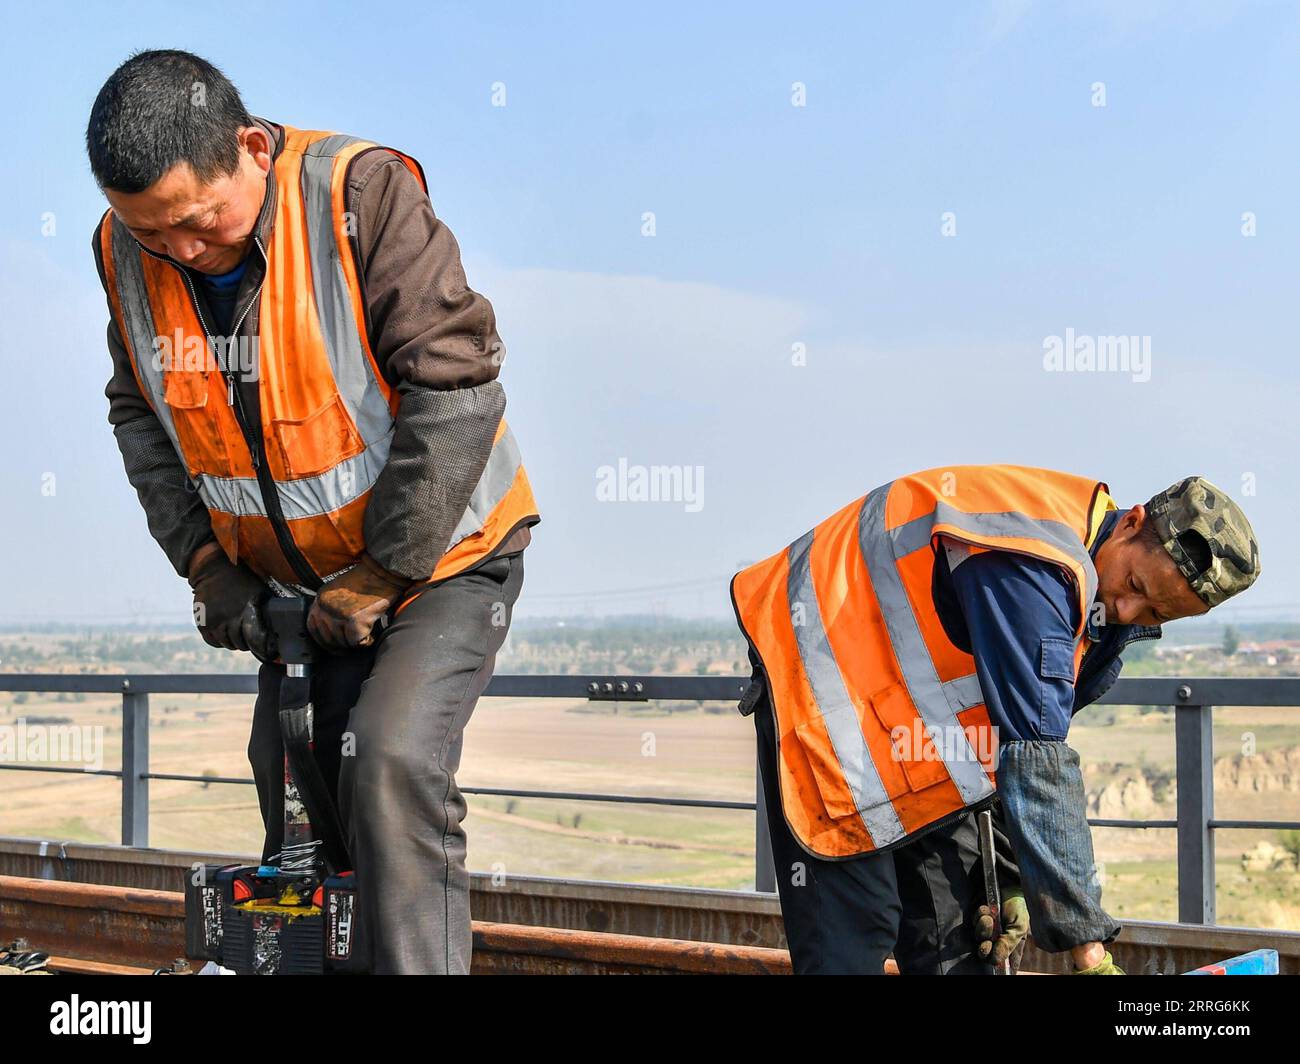 220511 -- DATONG, 11 de mayo de 2022 -- Trabajadores mantienen la sección Datong del ferrocarril Datong-Qinhuangdao en la provincia de Shanxi, al norte de China, 10 de mayo de 2022. Recientemente se ha llevado a cabo una revisión diaria del ferrocarril Datong-Qinhuangdao para garantizar operaciones ferroviarias seguras y sin problemas. El ferrocarril Datong-Qinhuangdao de 653 km, que une la ciudad de Datong en la provincia de Shanxi, rica en carbón, con la ciudad portuaria de Qinhuangdao, en la provincia de Hebei, al norte de China, es una arteria del transporte de carbón de China. Durante el tiempo de revisión, el ferrocarril detiene su servicio tres horas al día para que la construcción empeore Foto de stock